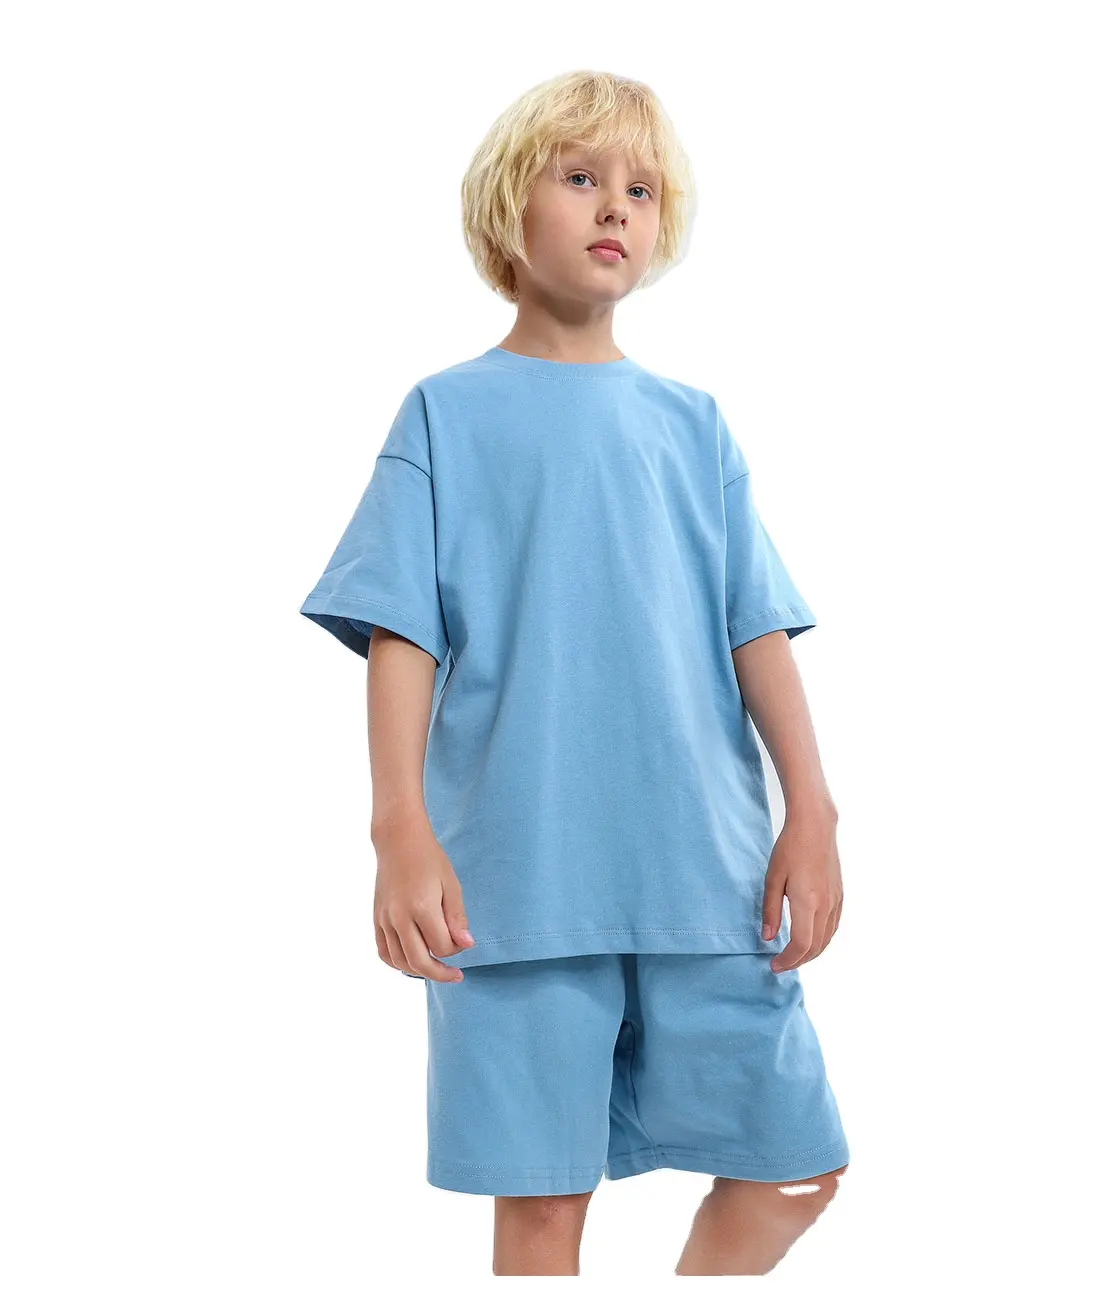 カスタムキッズプレーンTシャツトップス子供男の子女の子赤ちゃん幼児マルチカラーコットン服子供男の子特大Tシャツ